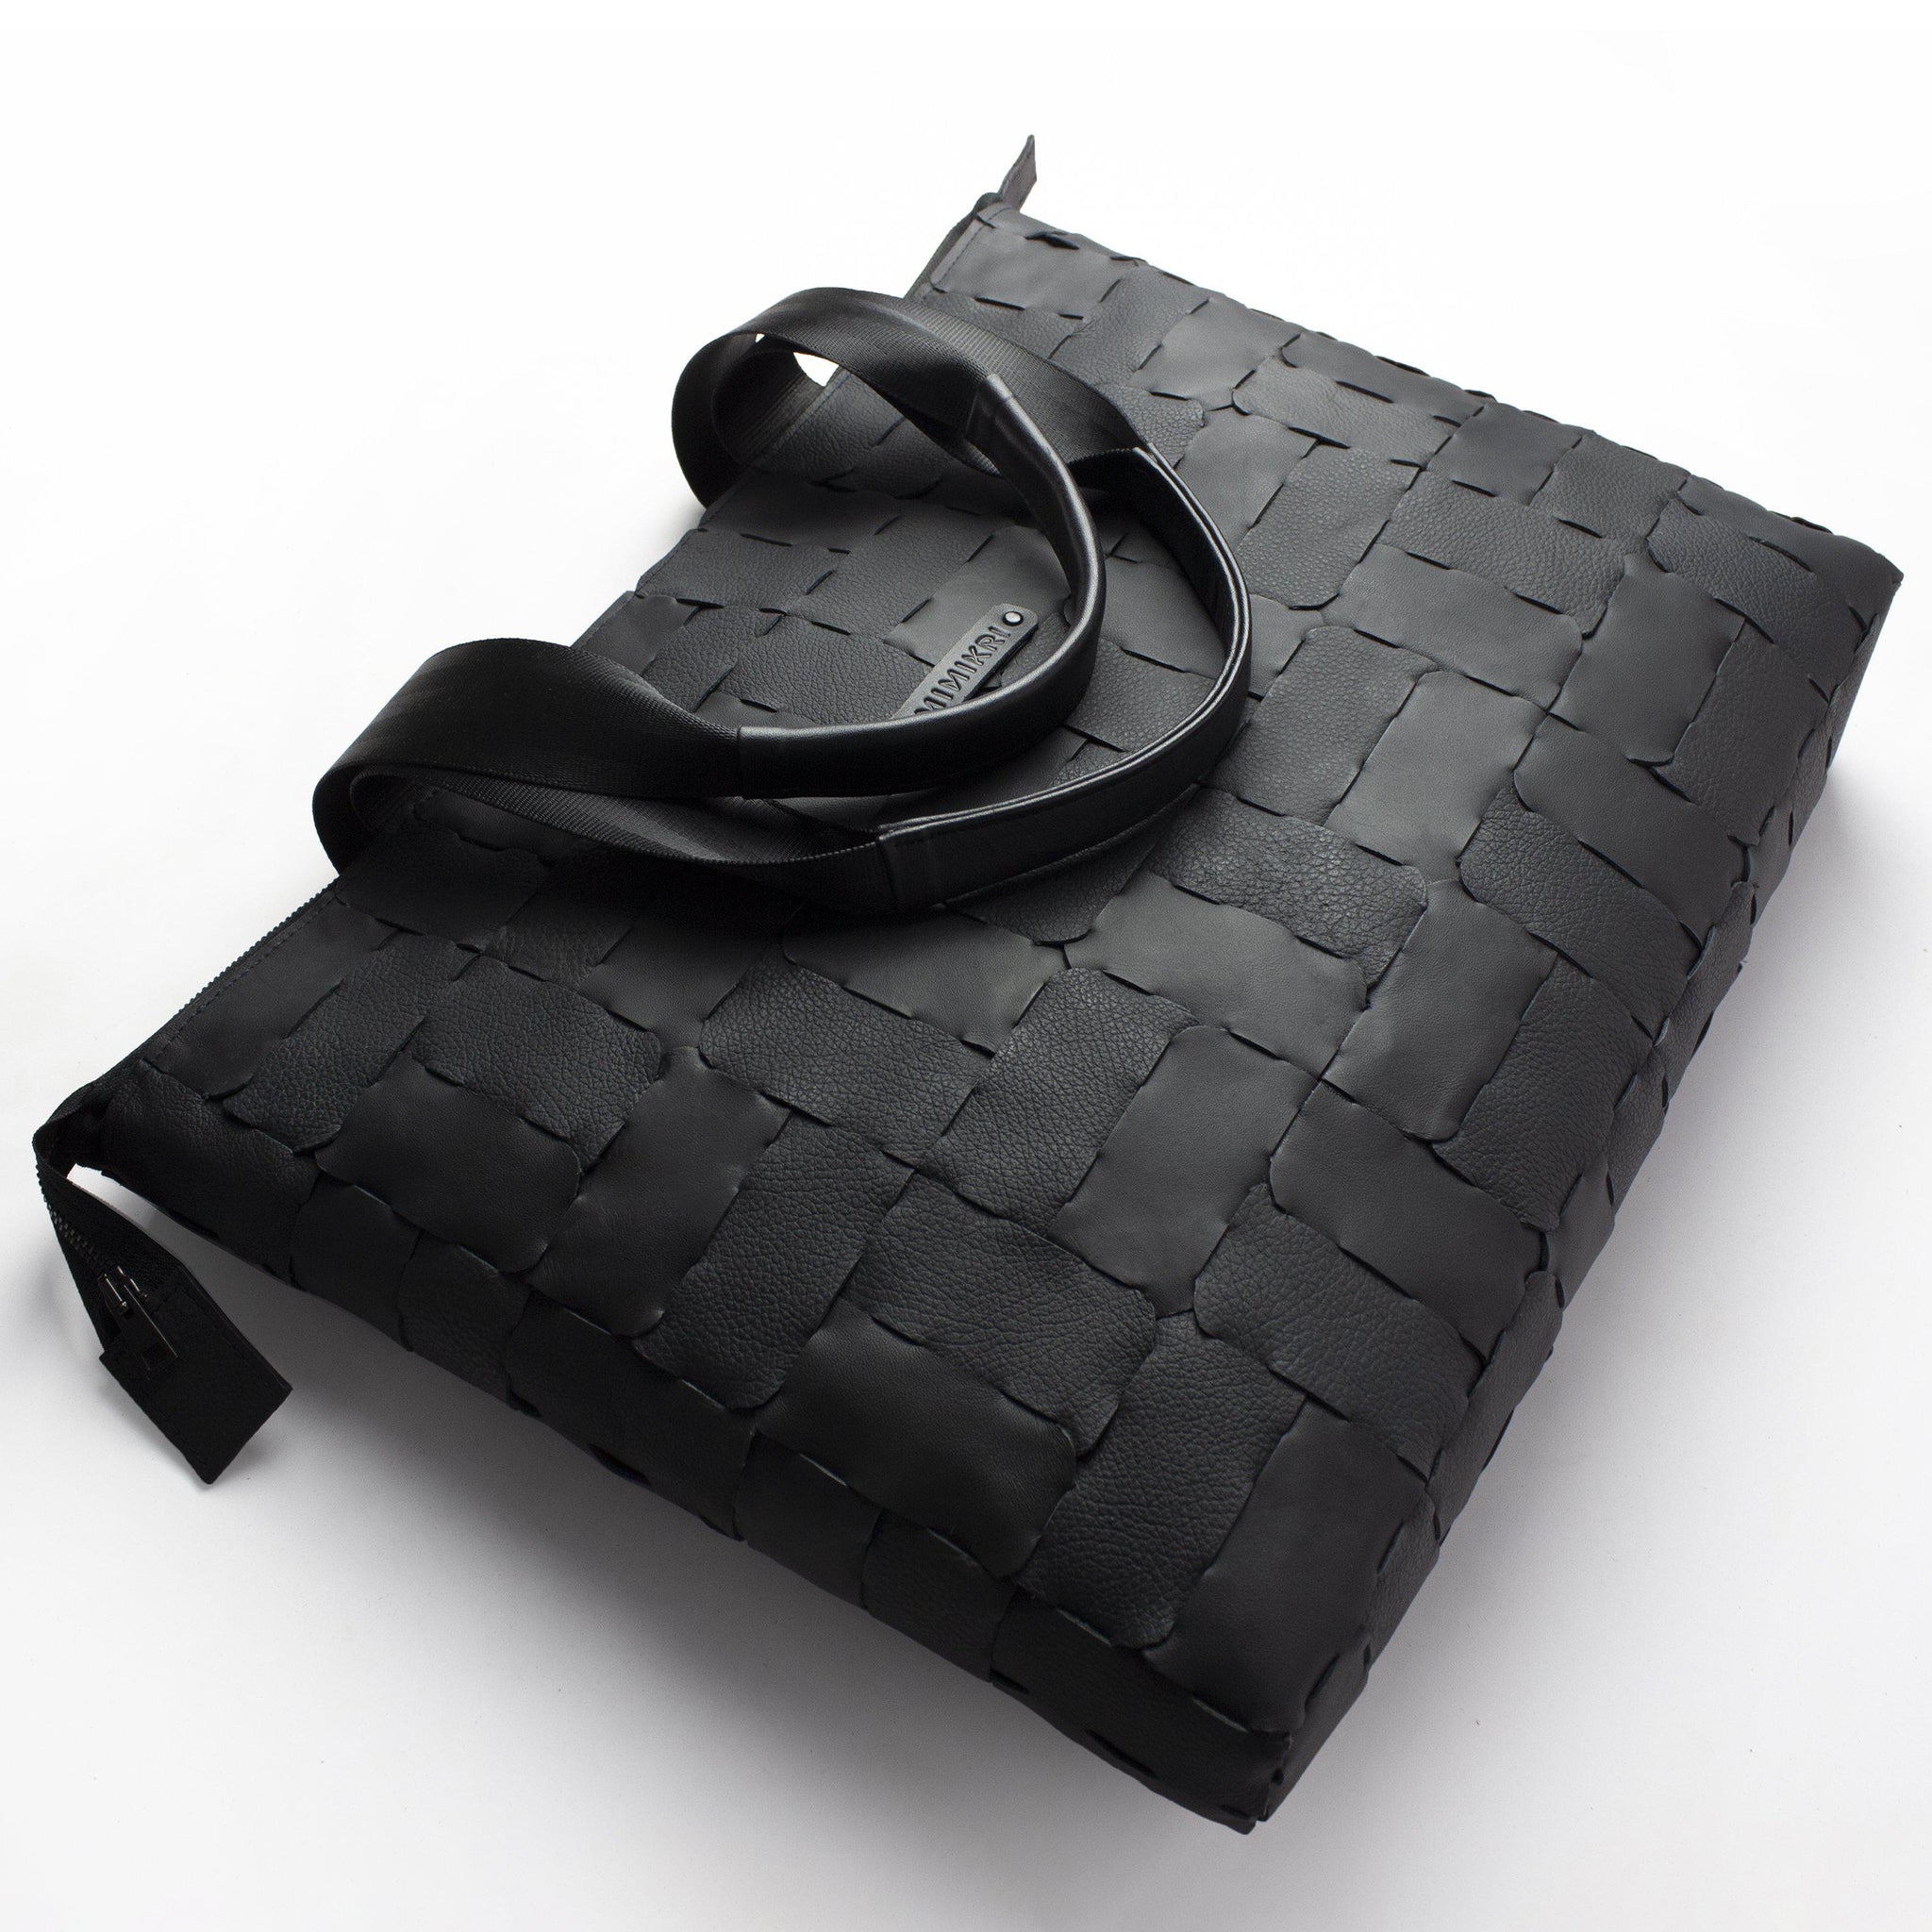 Designer shopper genuine leather / black recycled leather tote bag-designer, designer bag, geometric, hand_painted, handbag, leather bag, modular shopper, shoulder bag-Mimikri